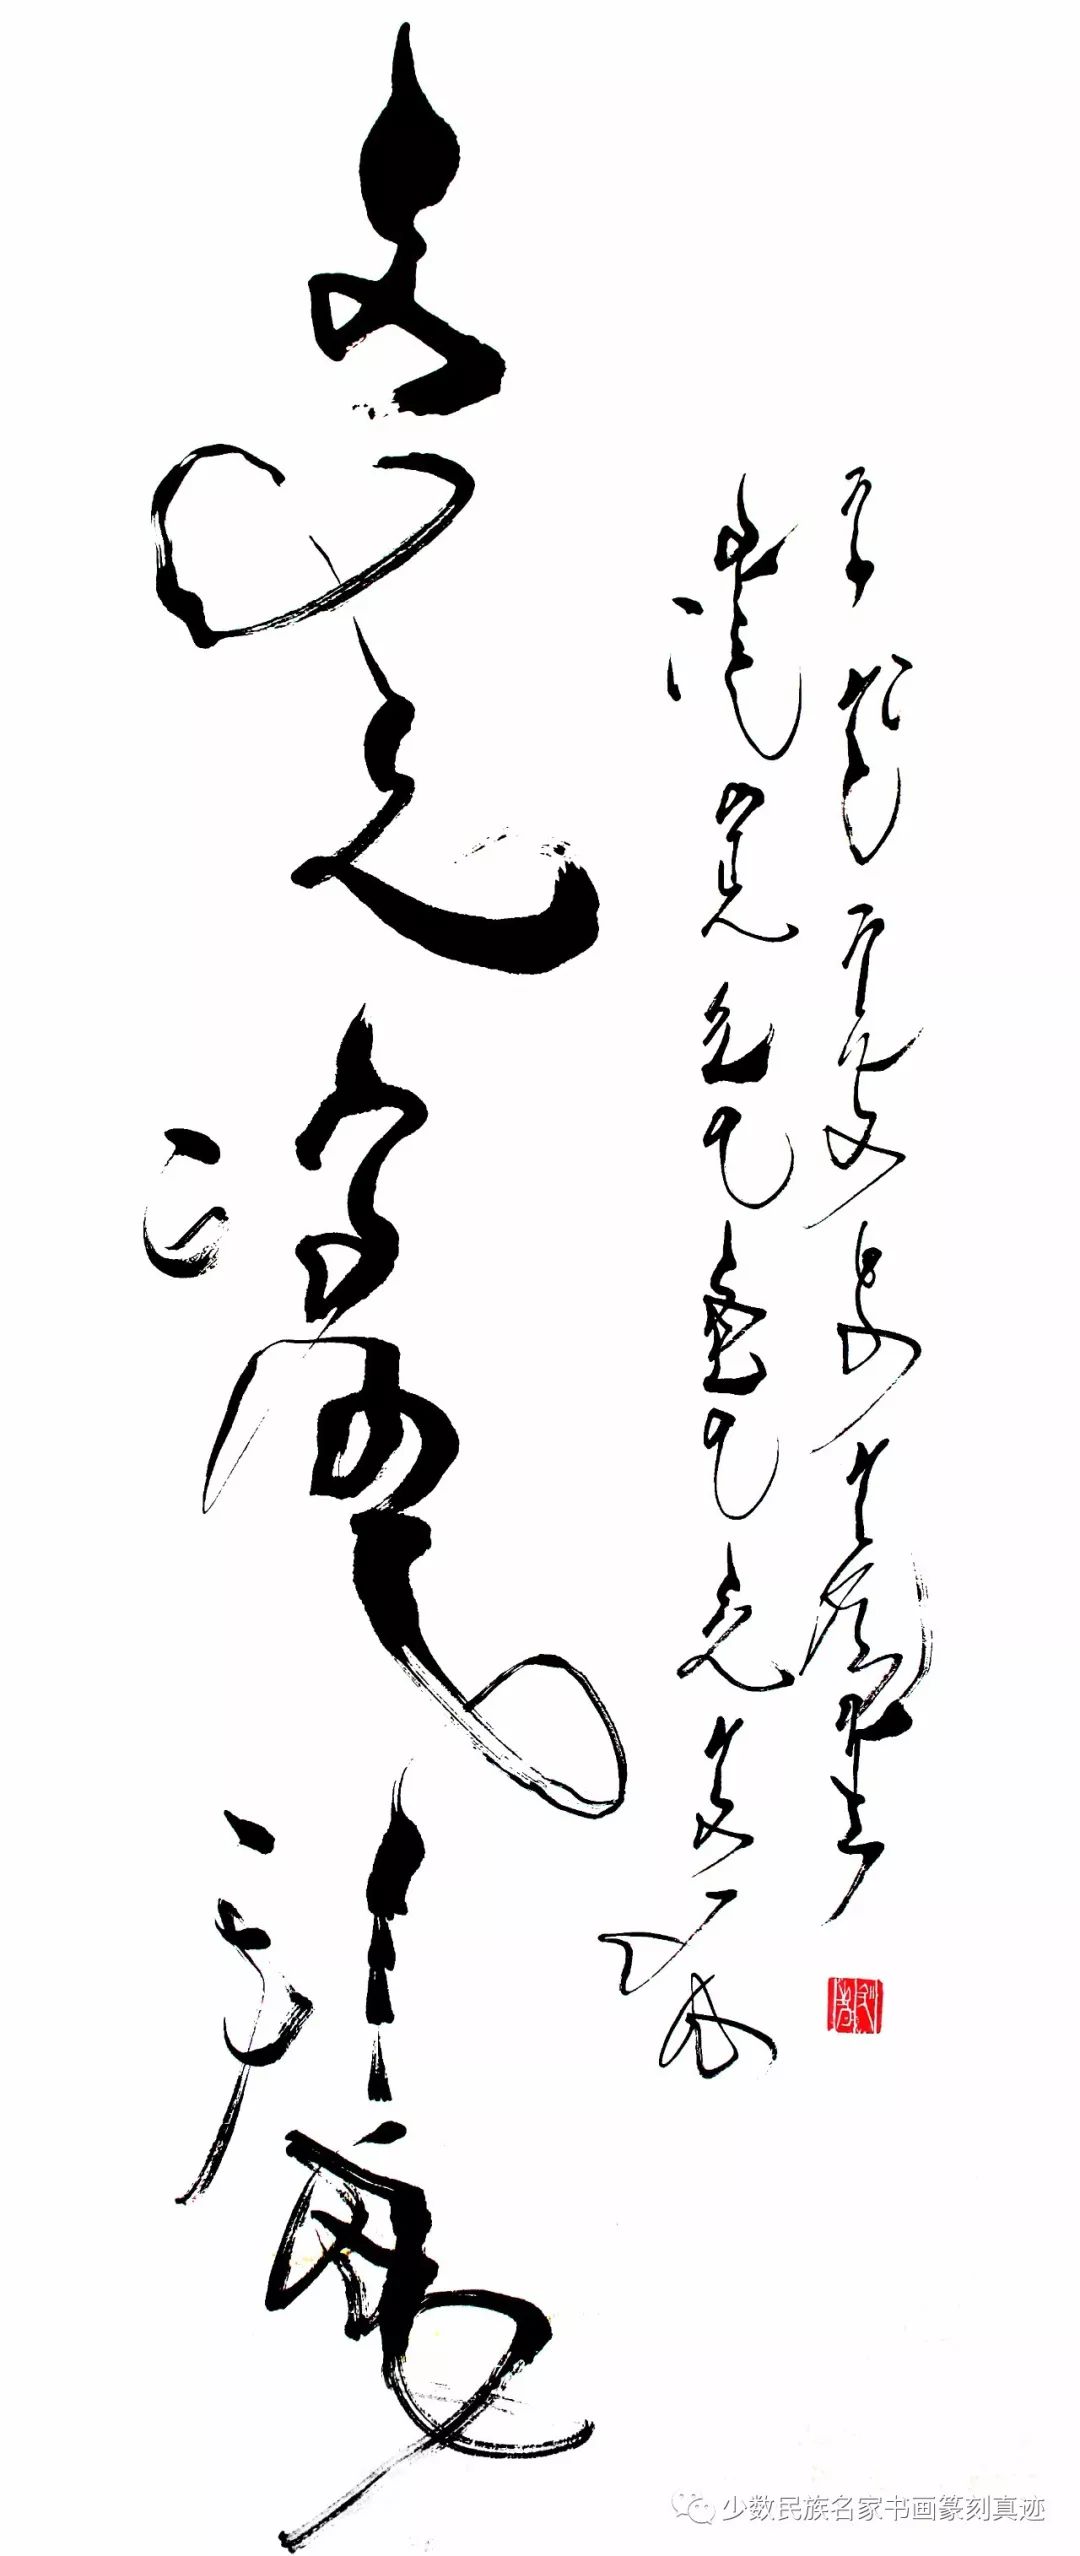 海山蒙古文书法作品